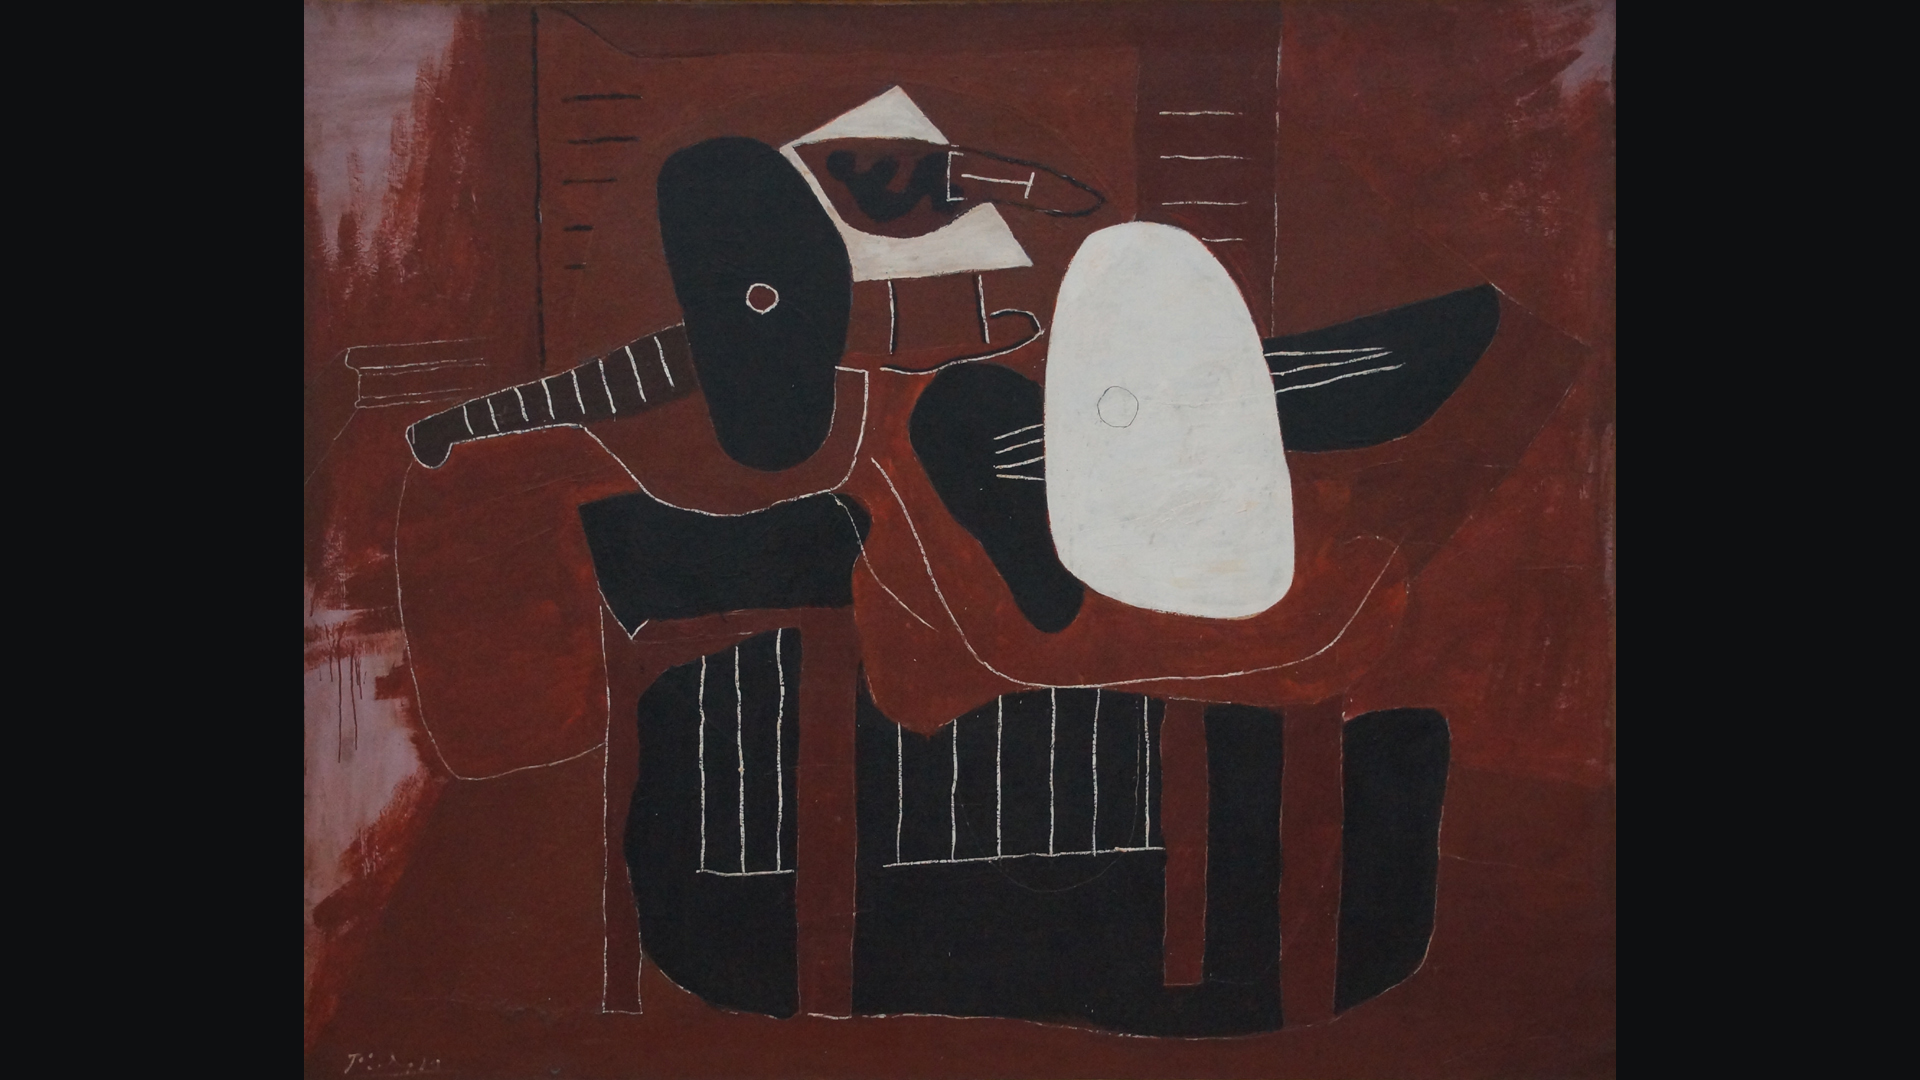 Fotostrecke Picasso 01: Musikinstrumente auf einem Tisch (1924)